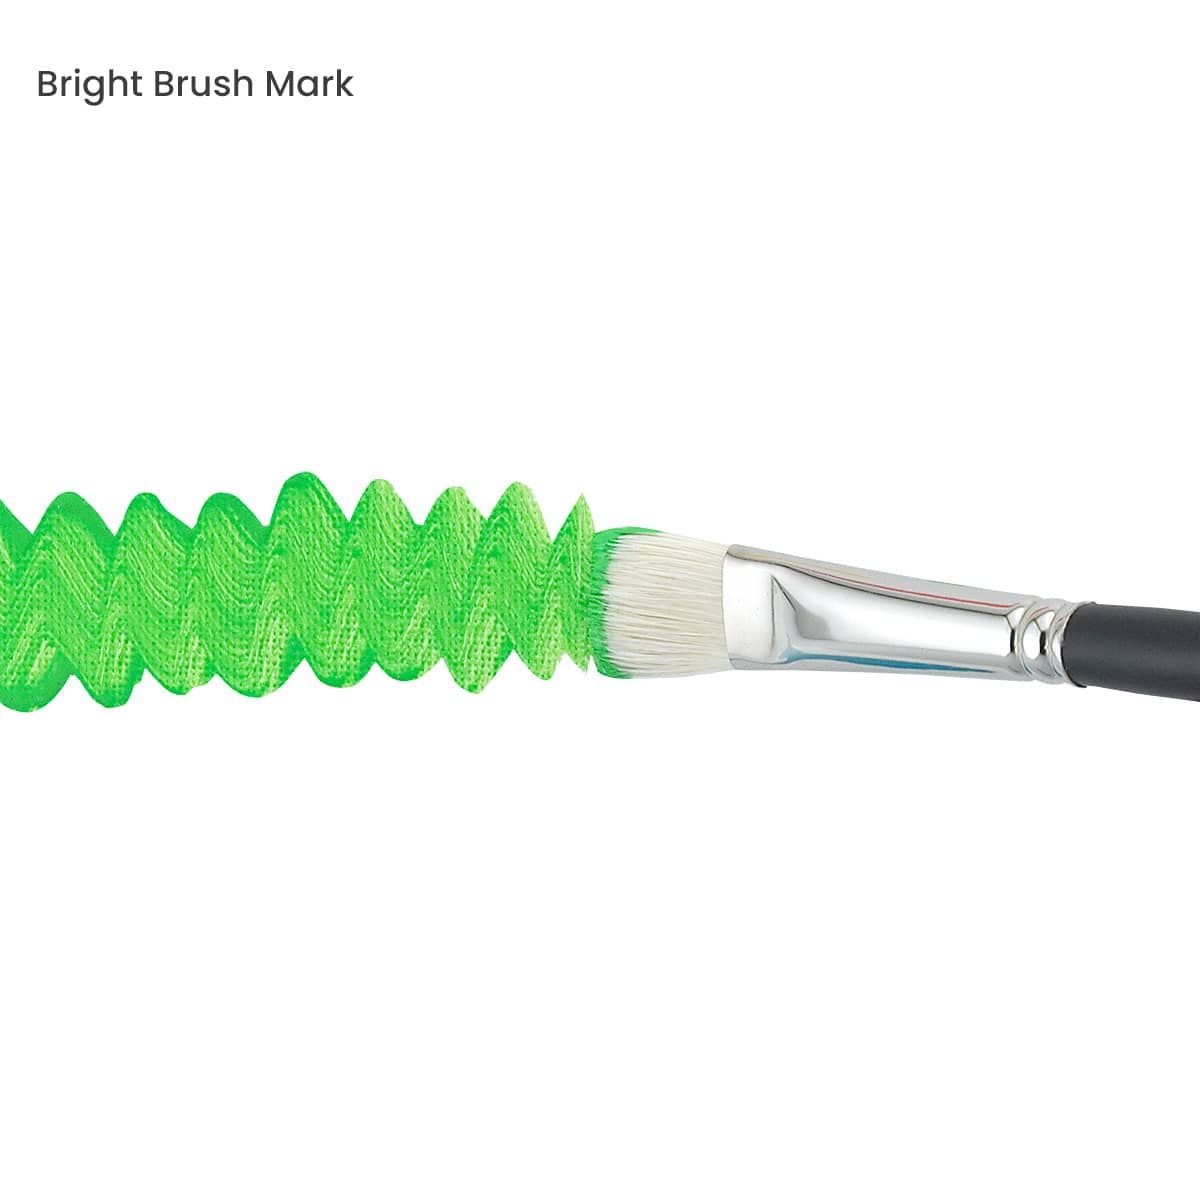 Bright Brush Mark